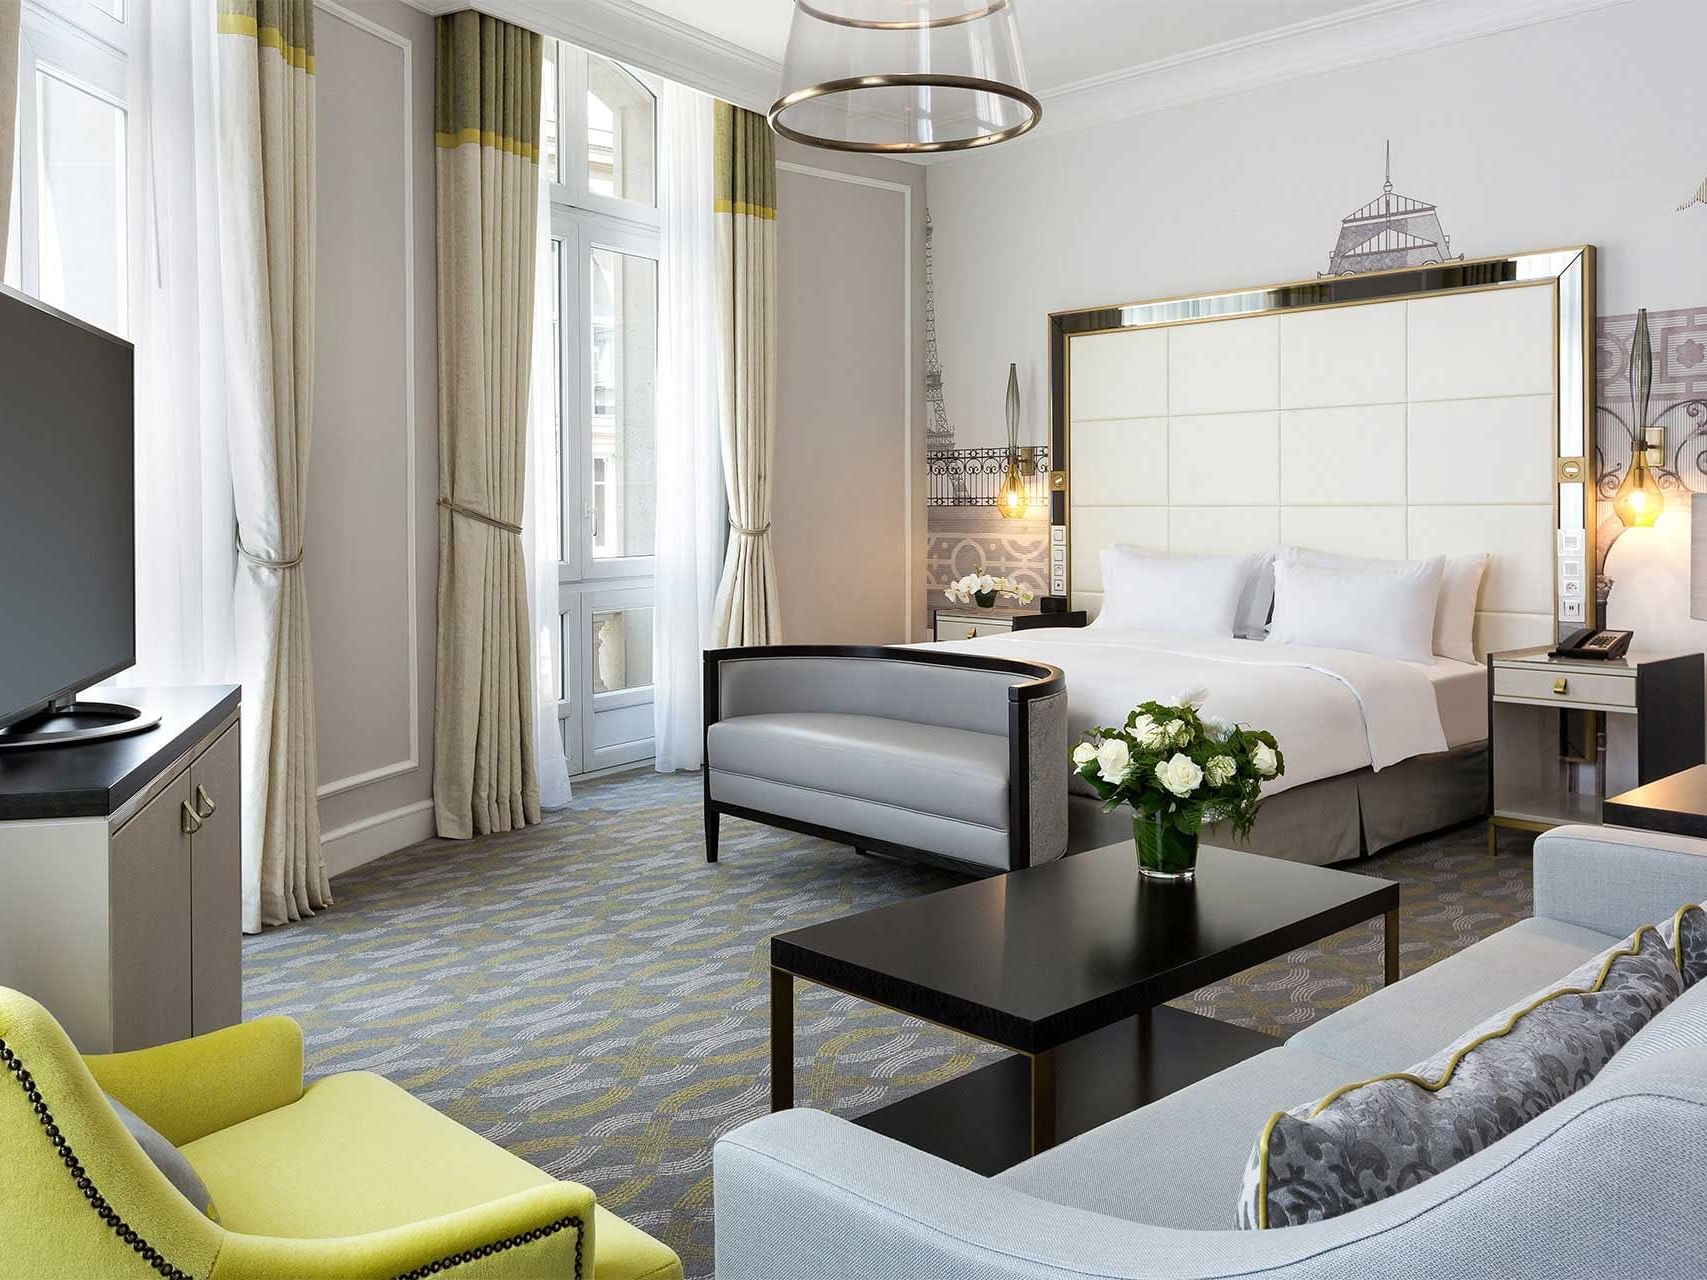 King Junior Suite Bed & furniture at Hilton Paris Opera Hotel